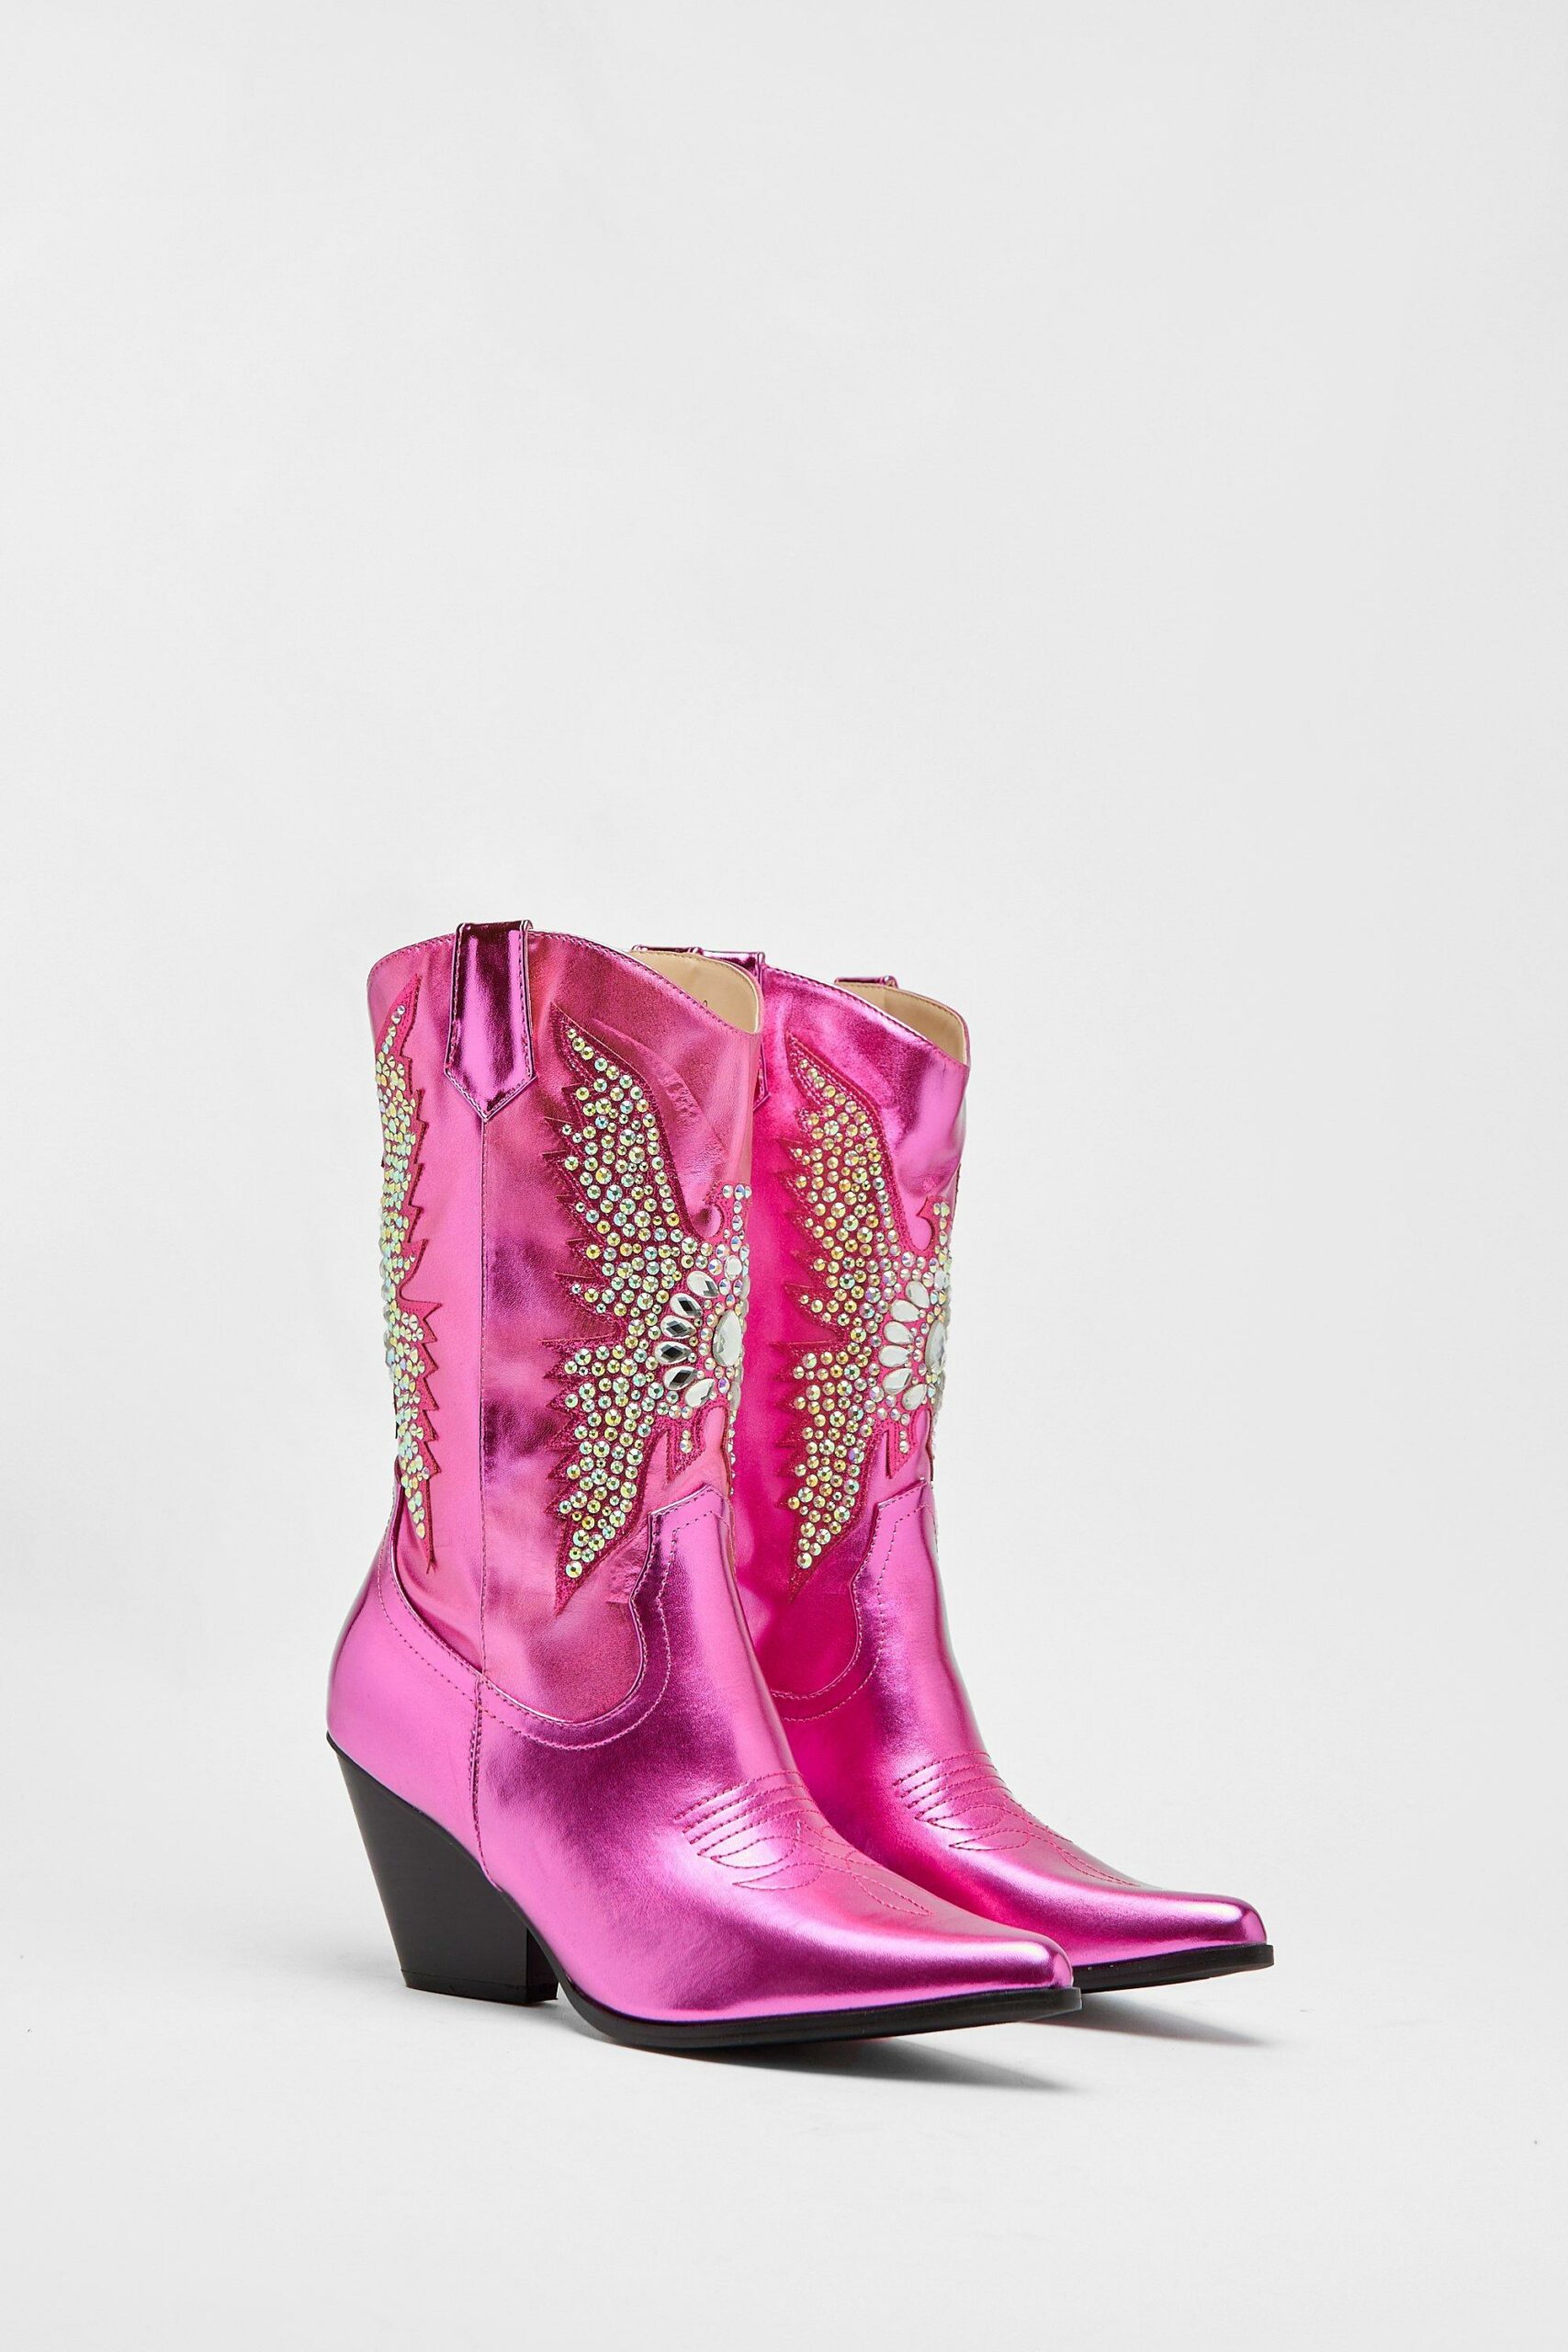 Metallic Embellished Western Boots